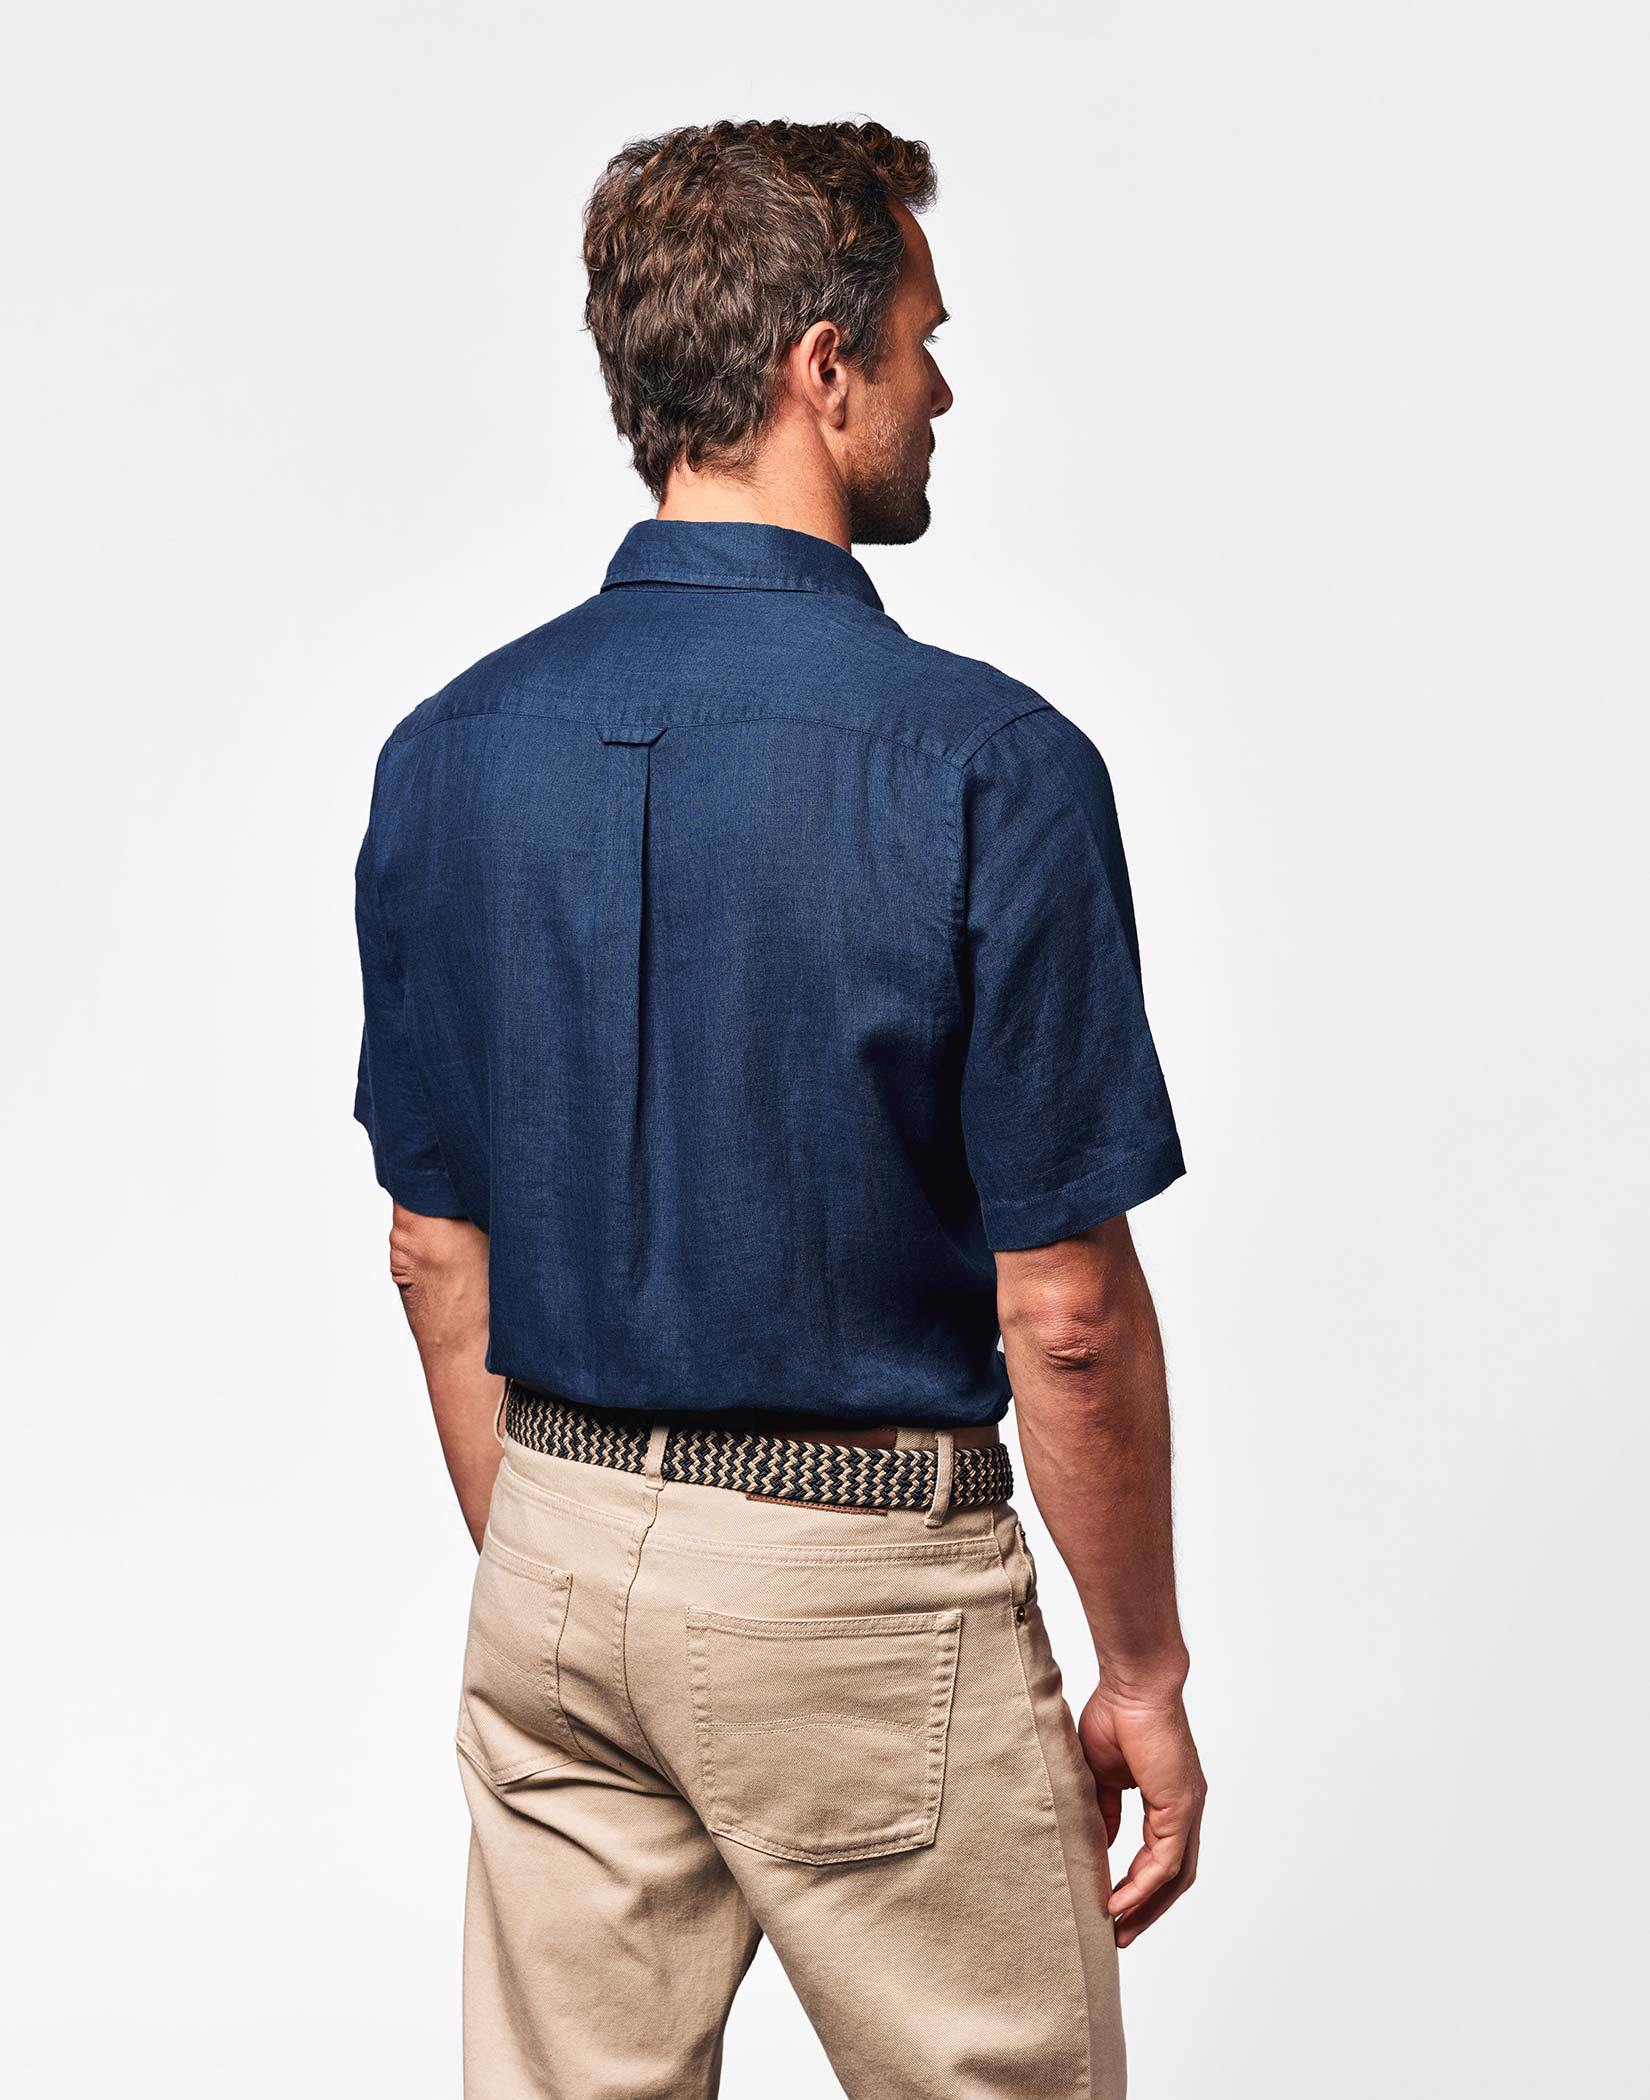 Linen Shirt Short Sleeve - Navy